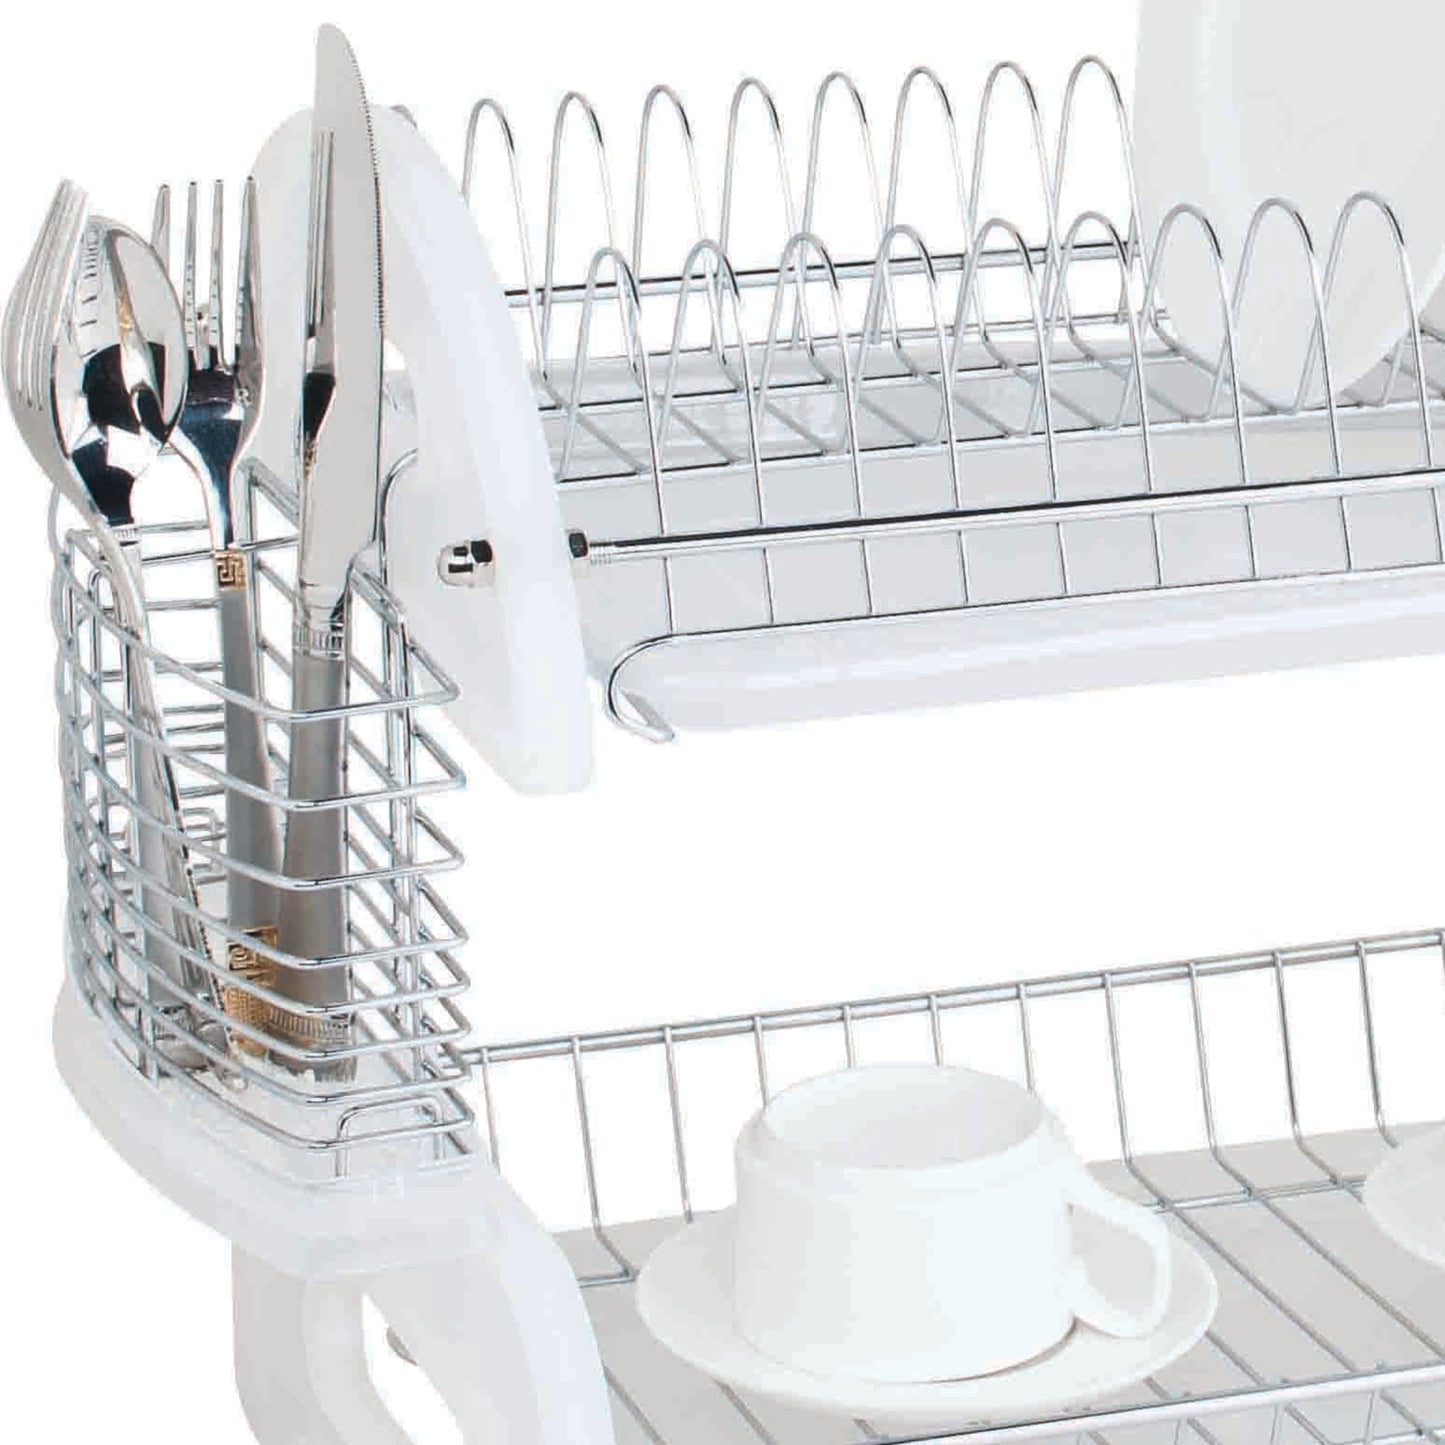 2 Tier Plastic Dish Drainer, White, KITCHEN ORGANIZATION